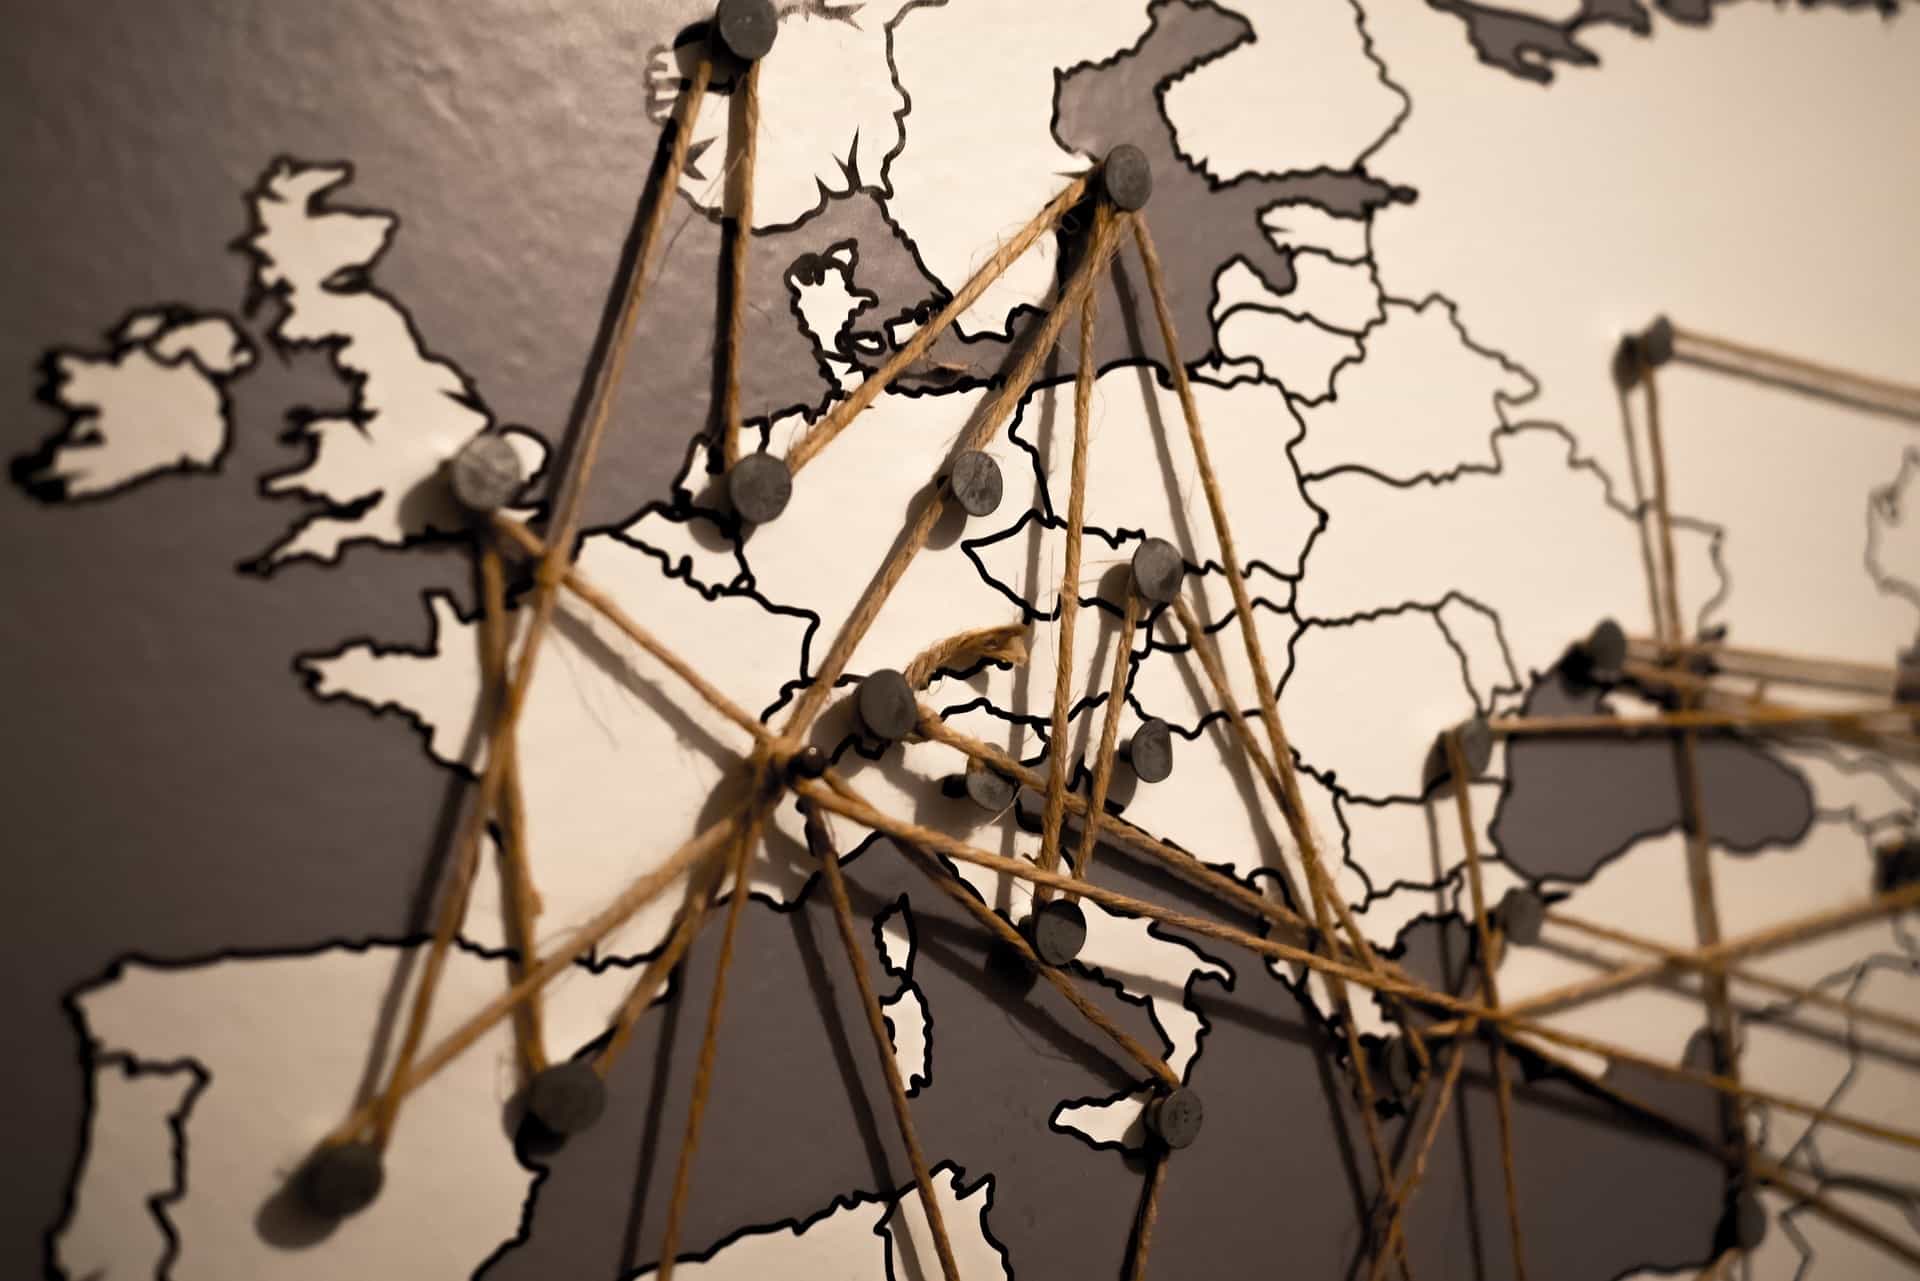 Europa als Karte mit Routenplanung durch Schnur und Reisnägel